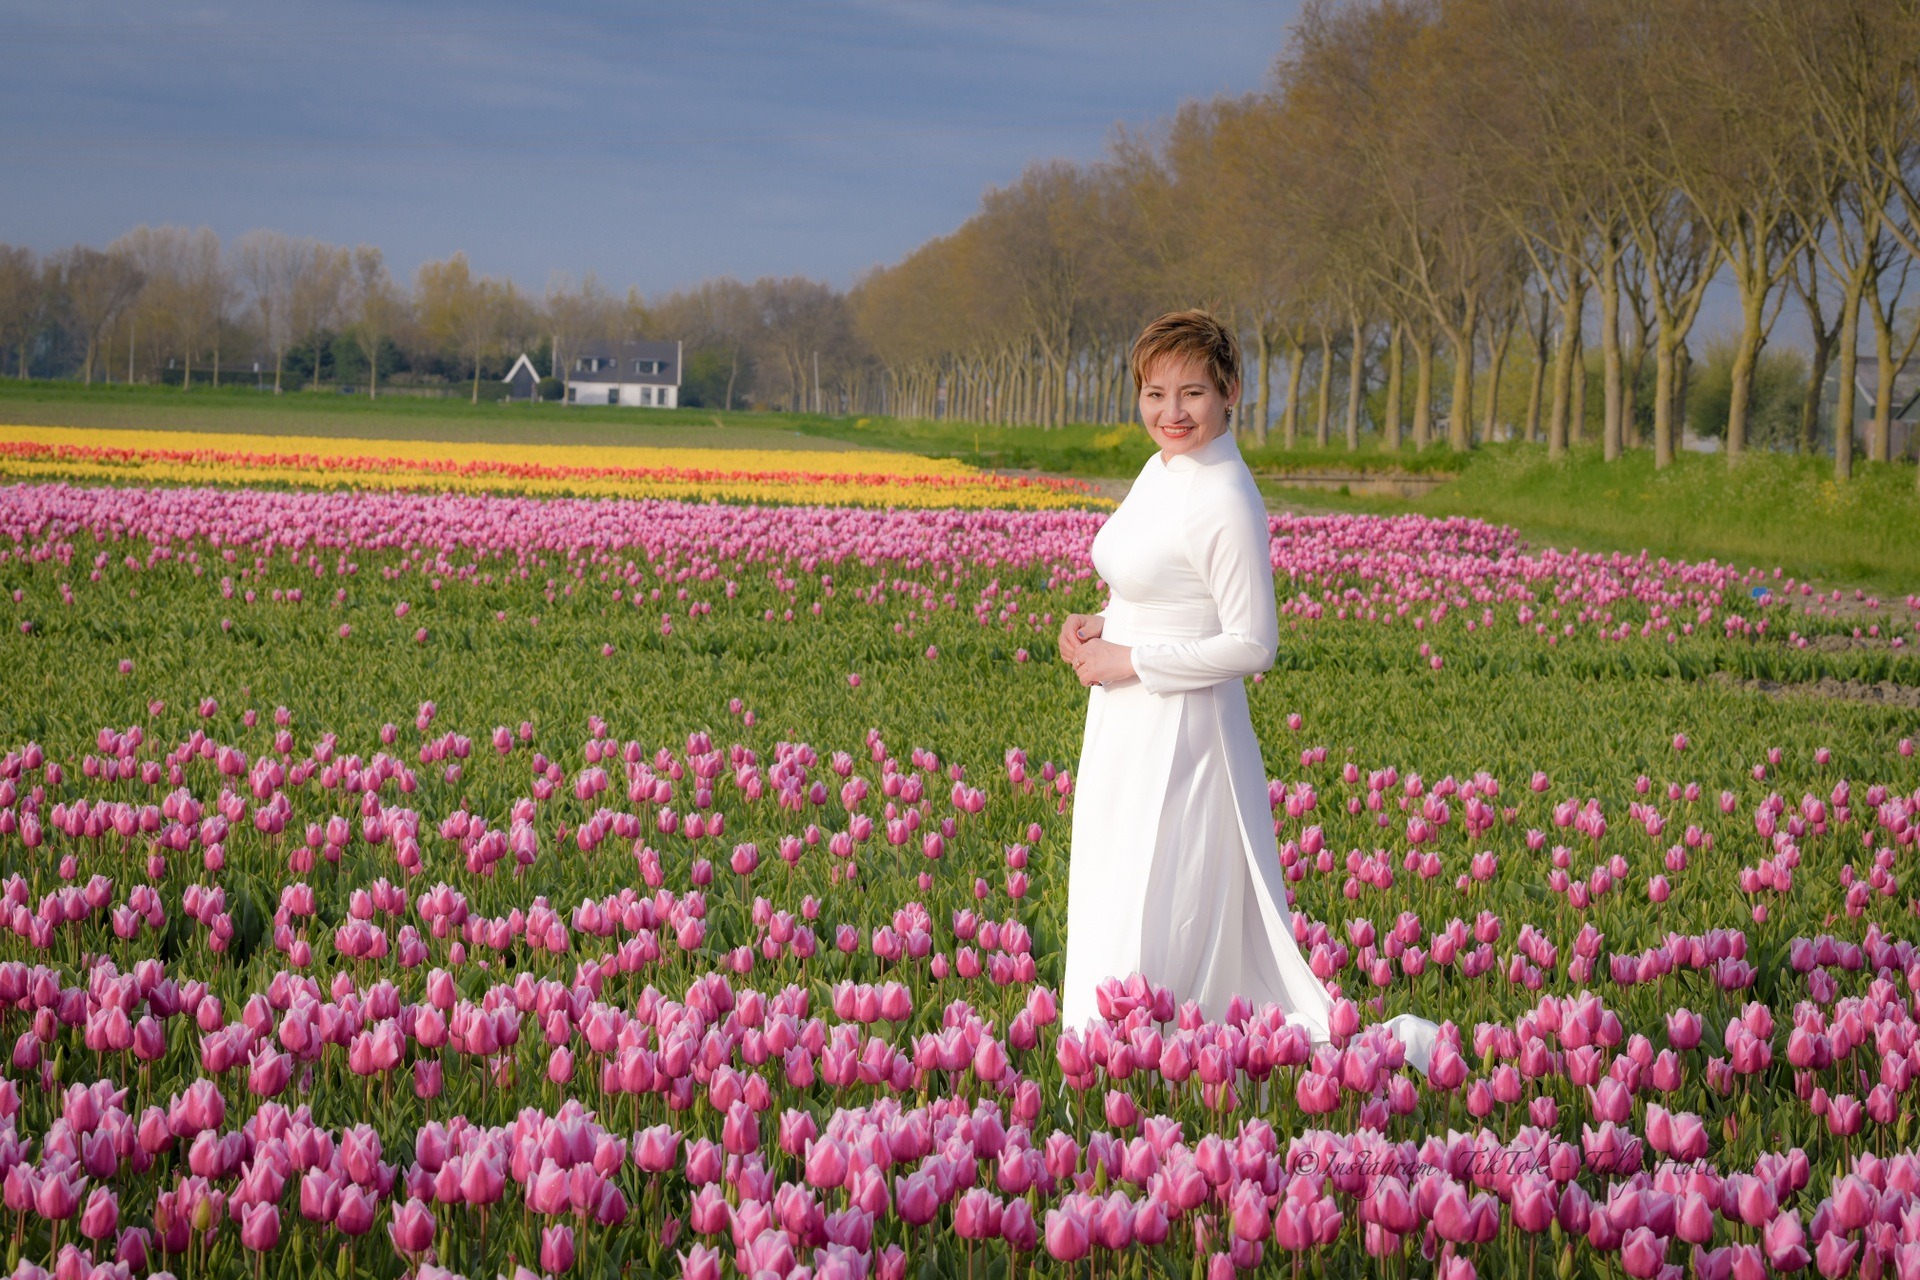 Mãn nhãn cánh đồng hoa tulip đẹp như cổ tích ở ngôi làng cổ 400 tuổi - Ảnh 16.